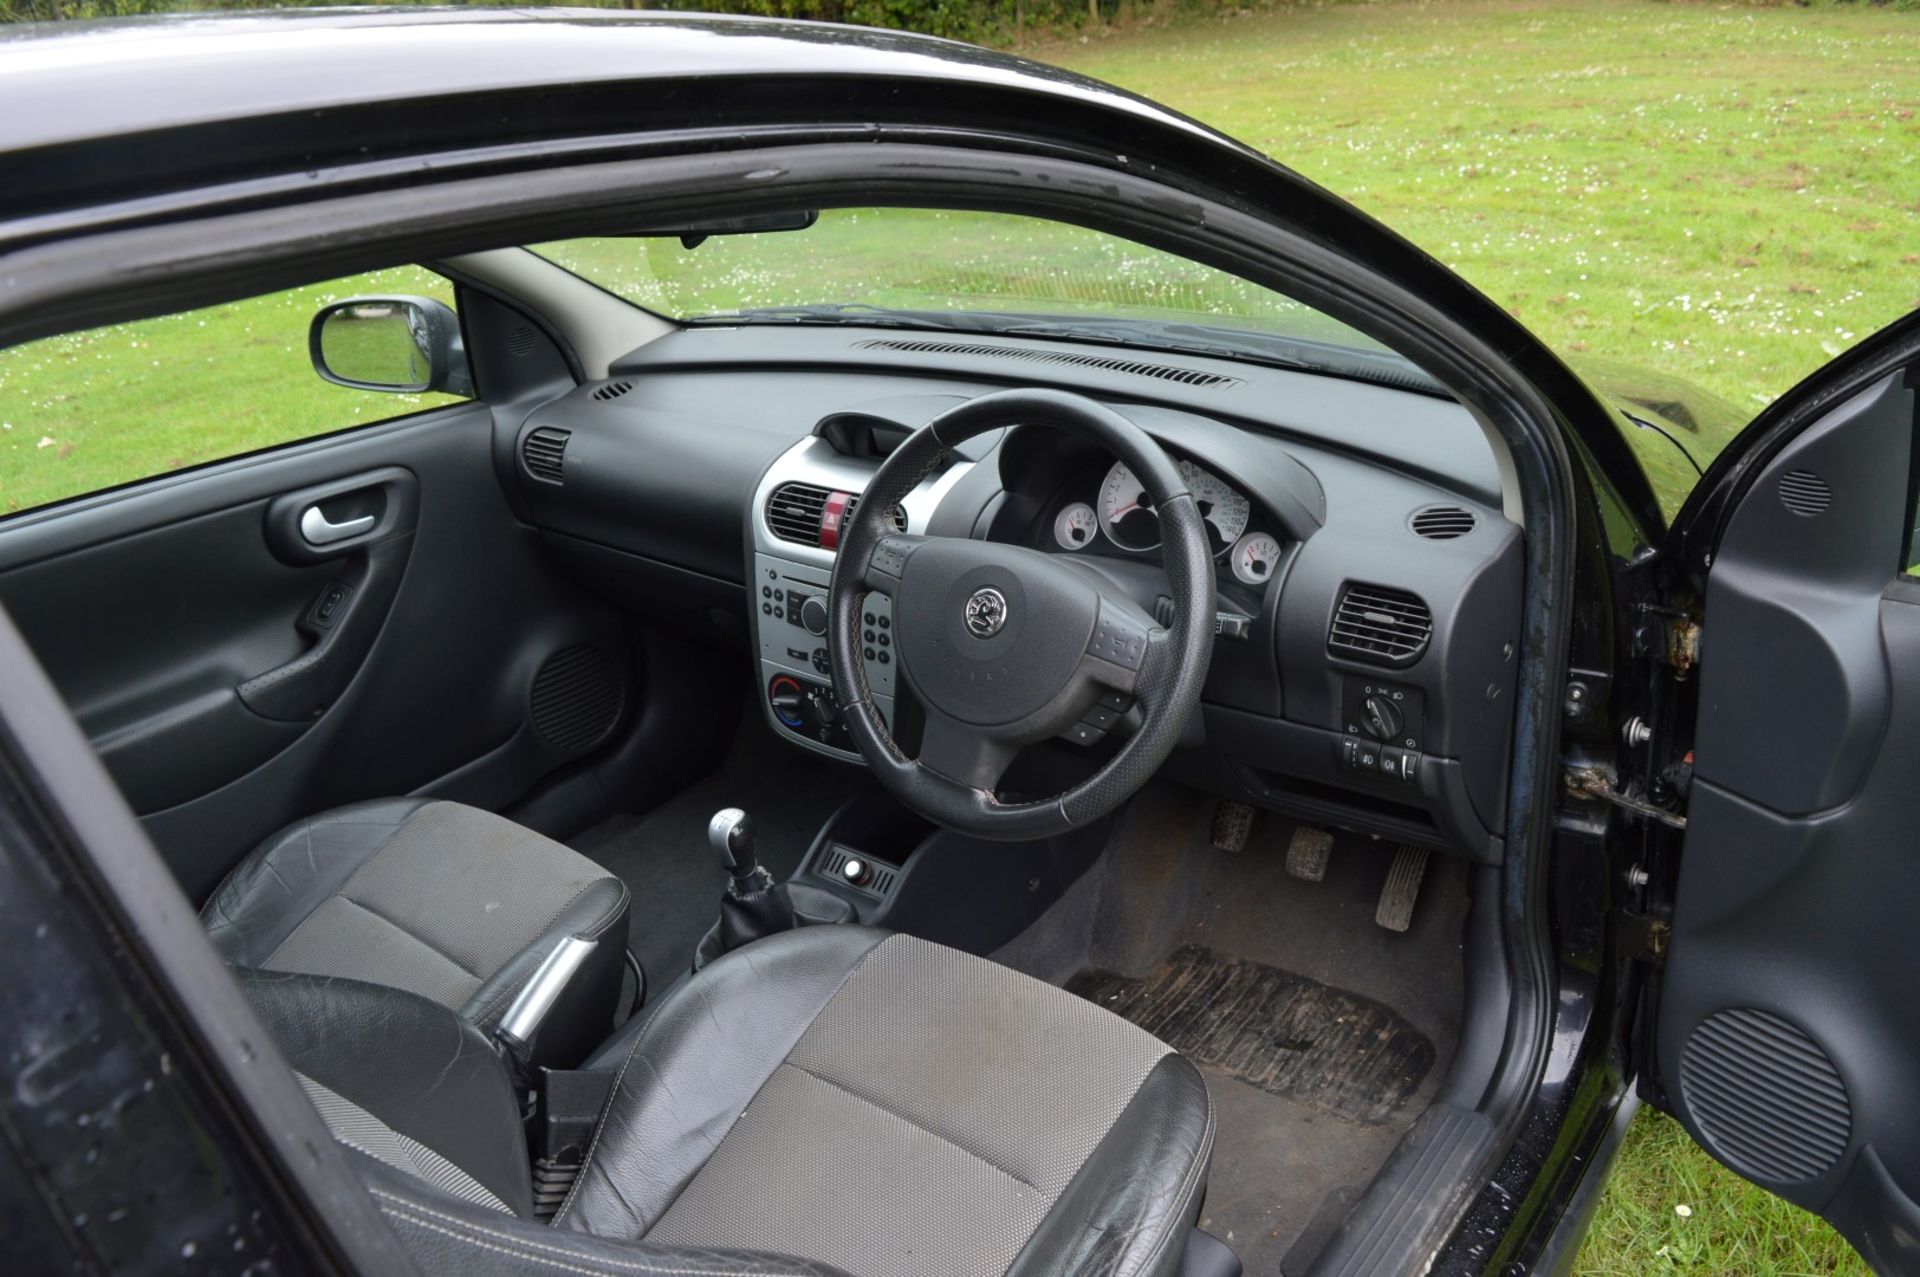 1 x Vauxhall Corsa SXI+ 3 Door Hatchback 1.2 - 2006 56 Plate - 78,000 Miles - MOT June 2018 - Image 27 of 36